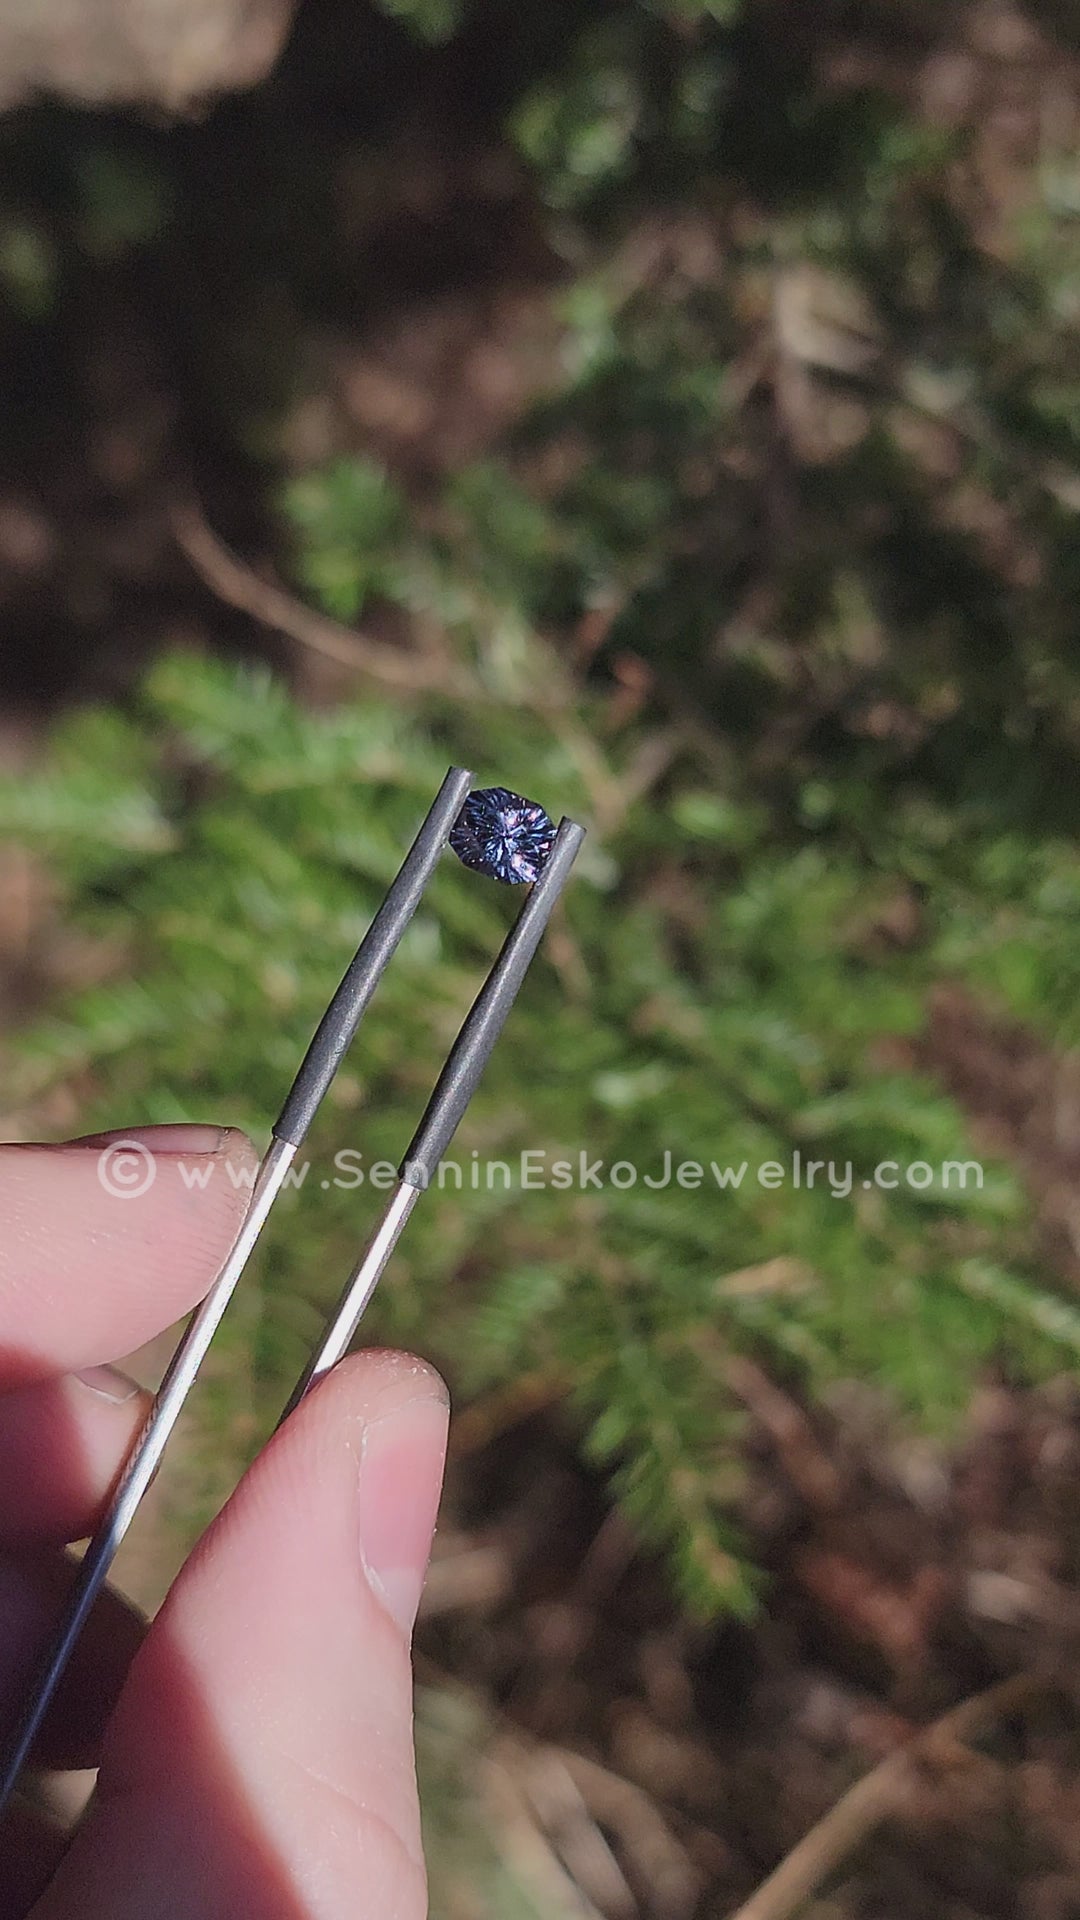 1.2 carat Blue/Gray Spinel Octagon - Fantasy Cut 6.6x5.8mm